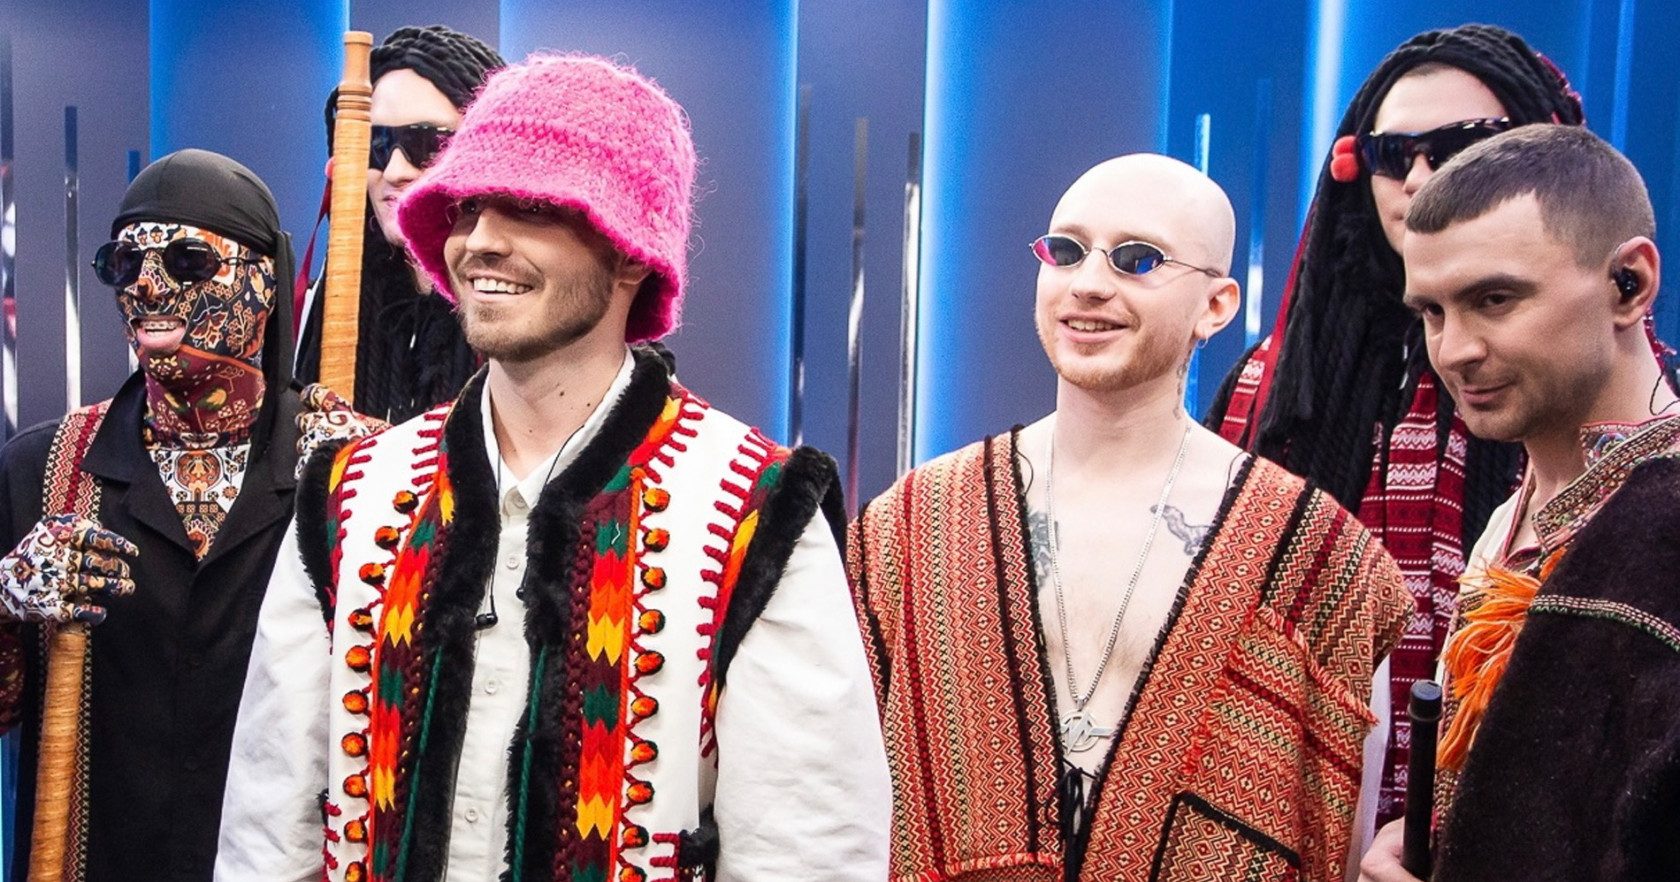 Ucraina: Kalush Orchestra, band vincitrice dell'Eurovision, raccoglie 370 mila dollari col cappello di Oleh Psiuk